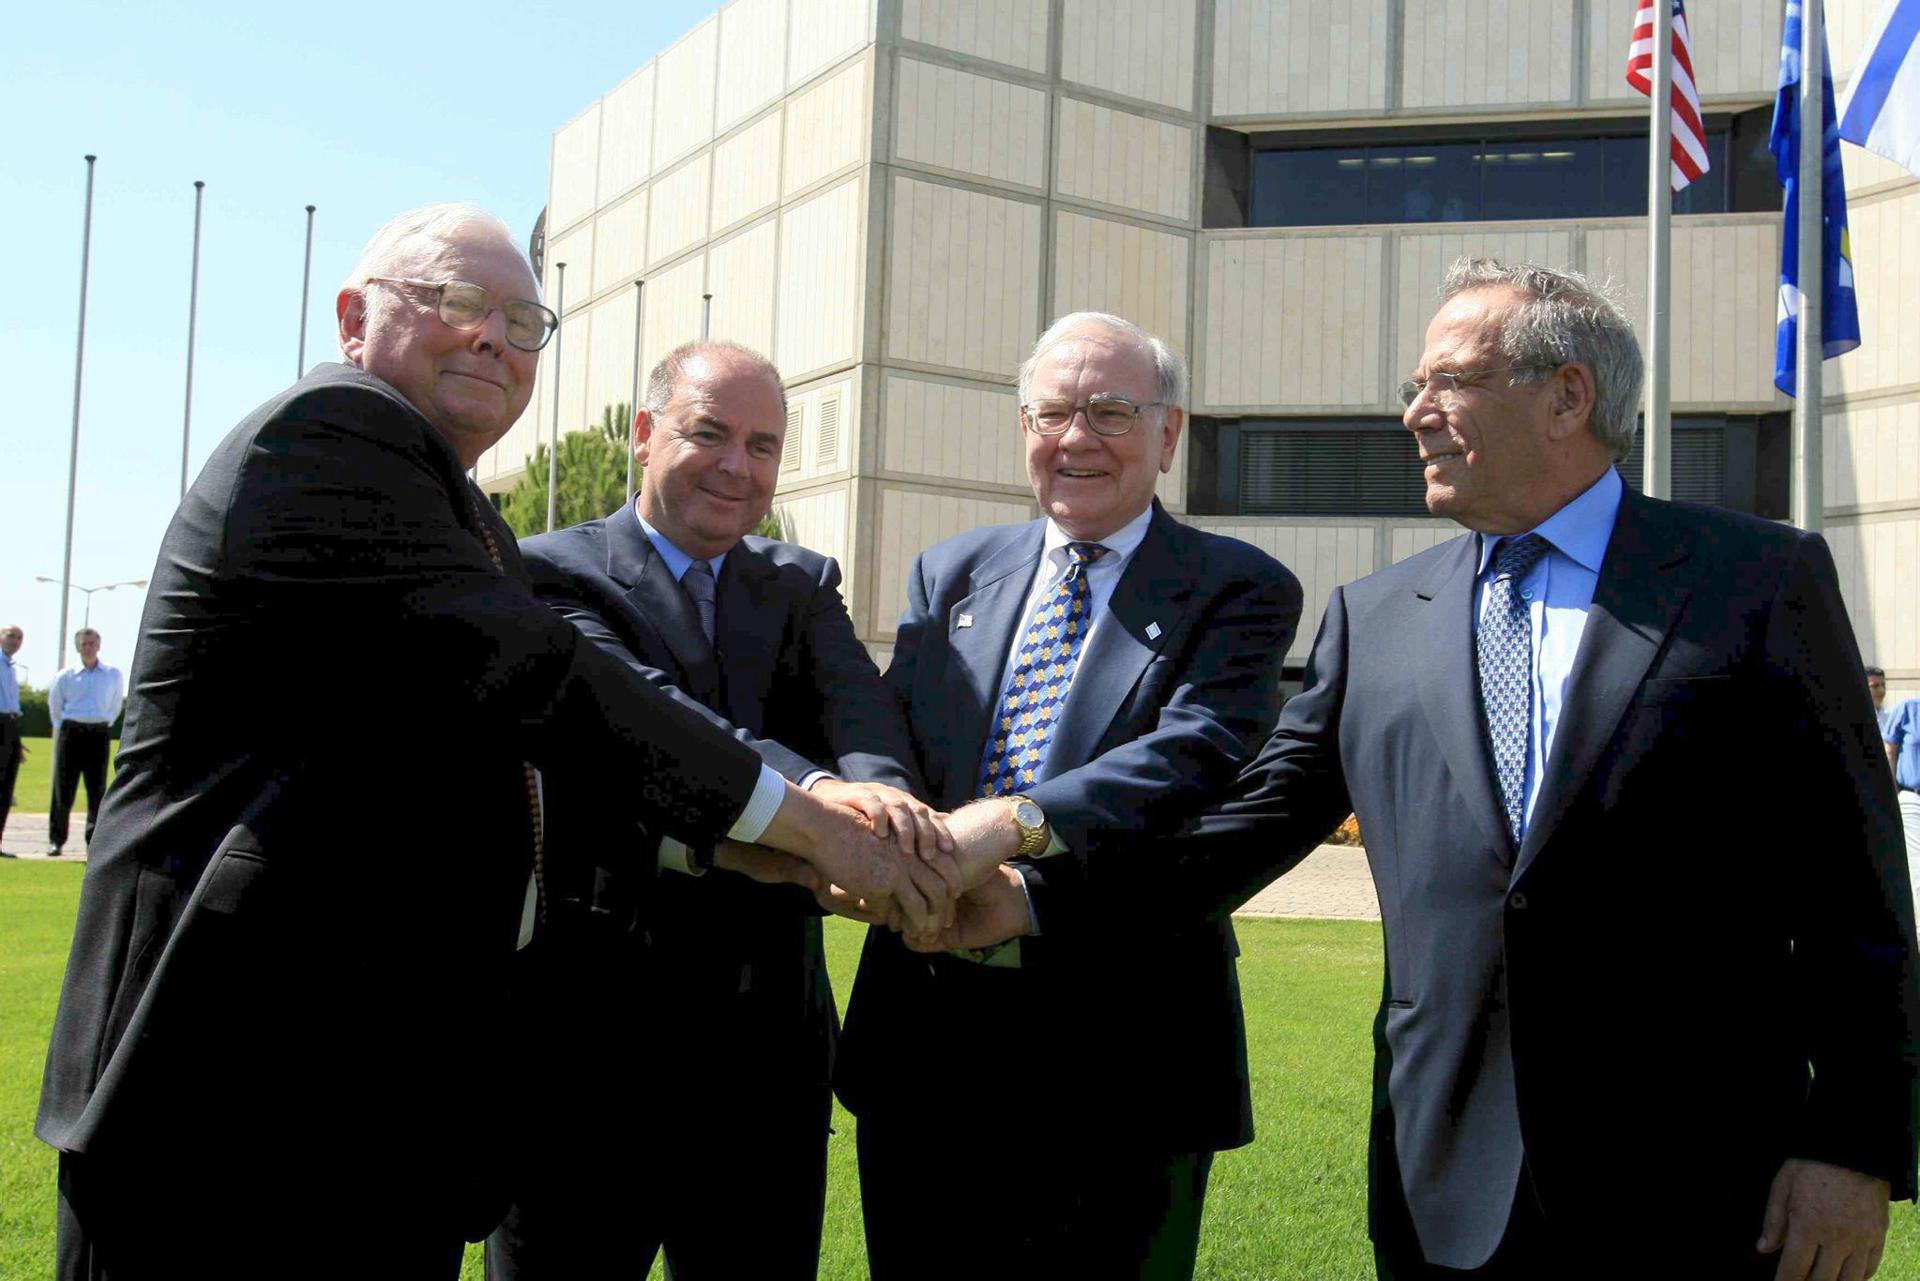 Charlie Munger, primero por la izquierda, socio de Warren Buffet, tercero.